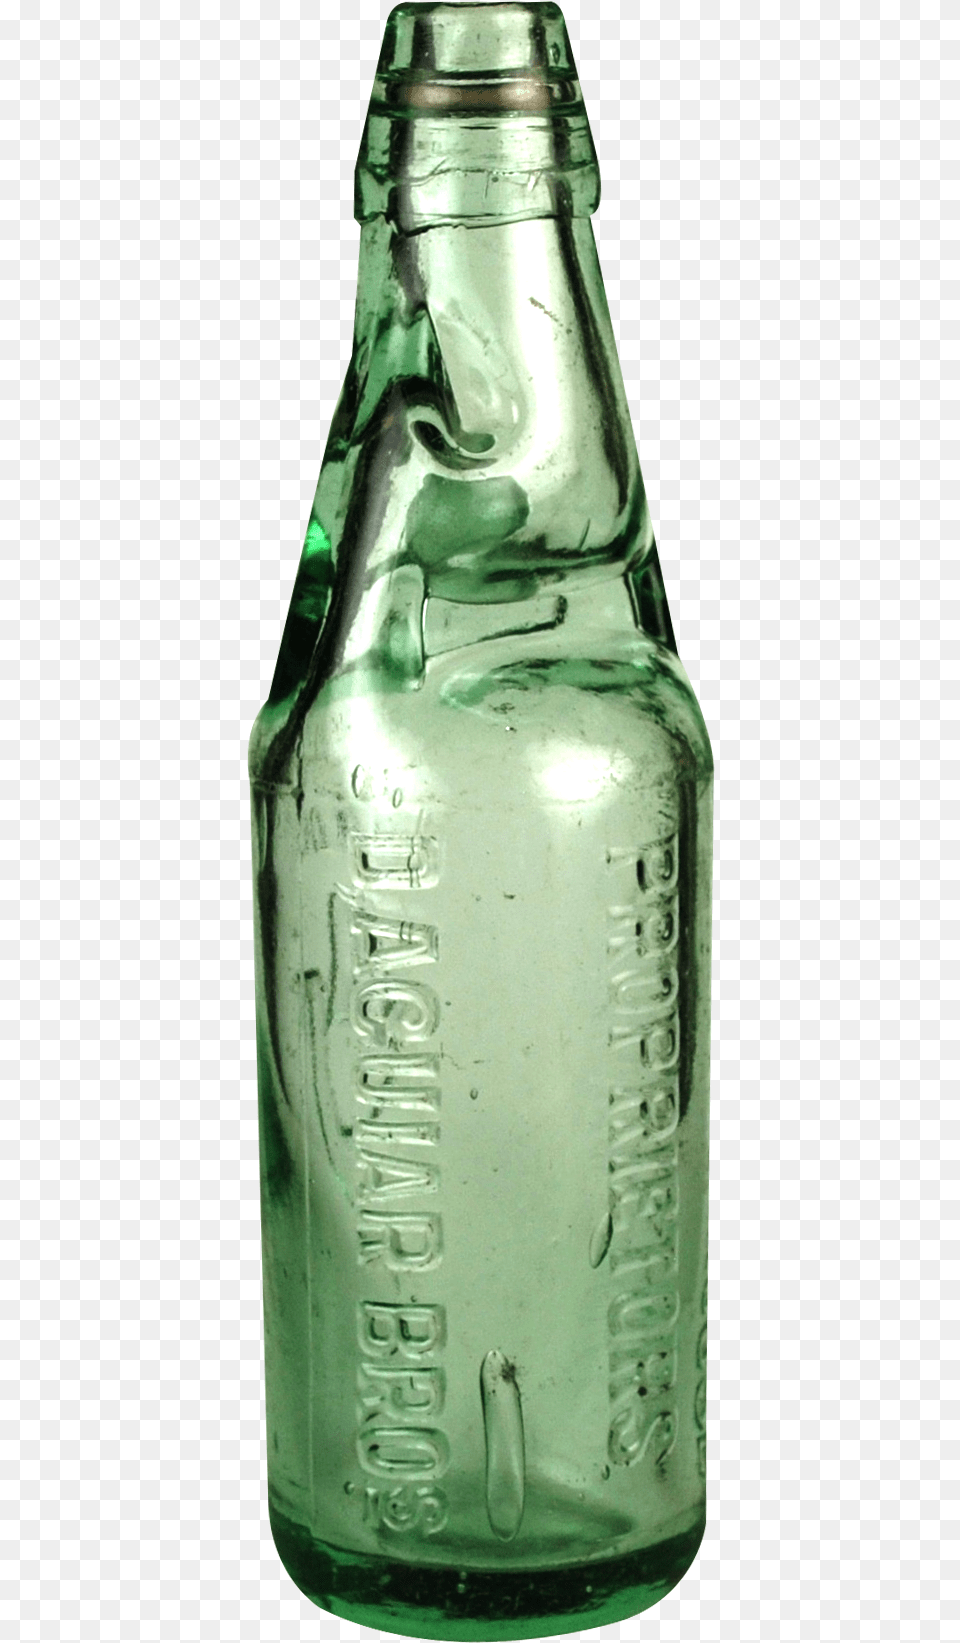 Soda Bottle Alcohol, Beer, Beverage, Beer Bottle Free Transparent Png